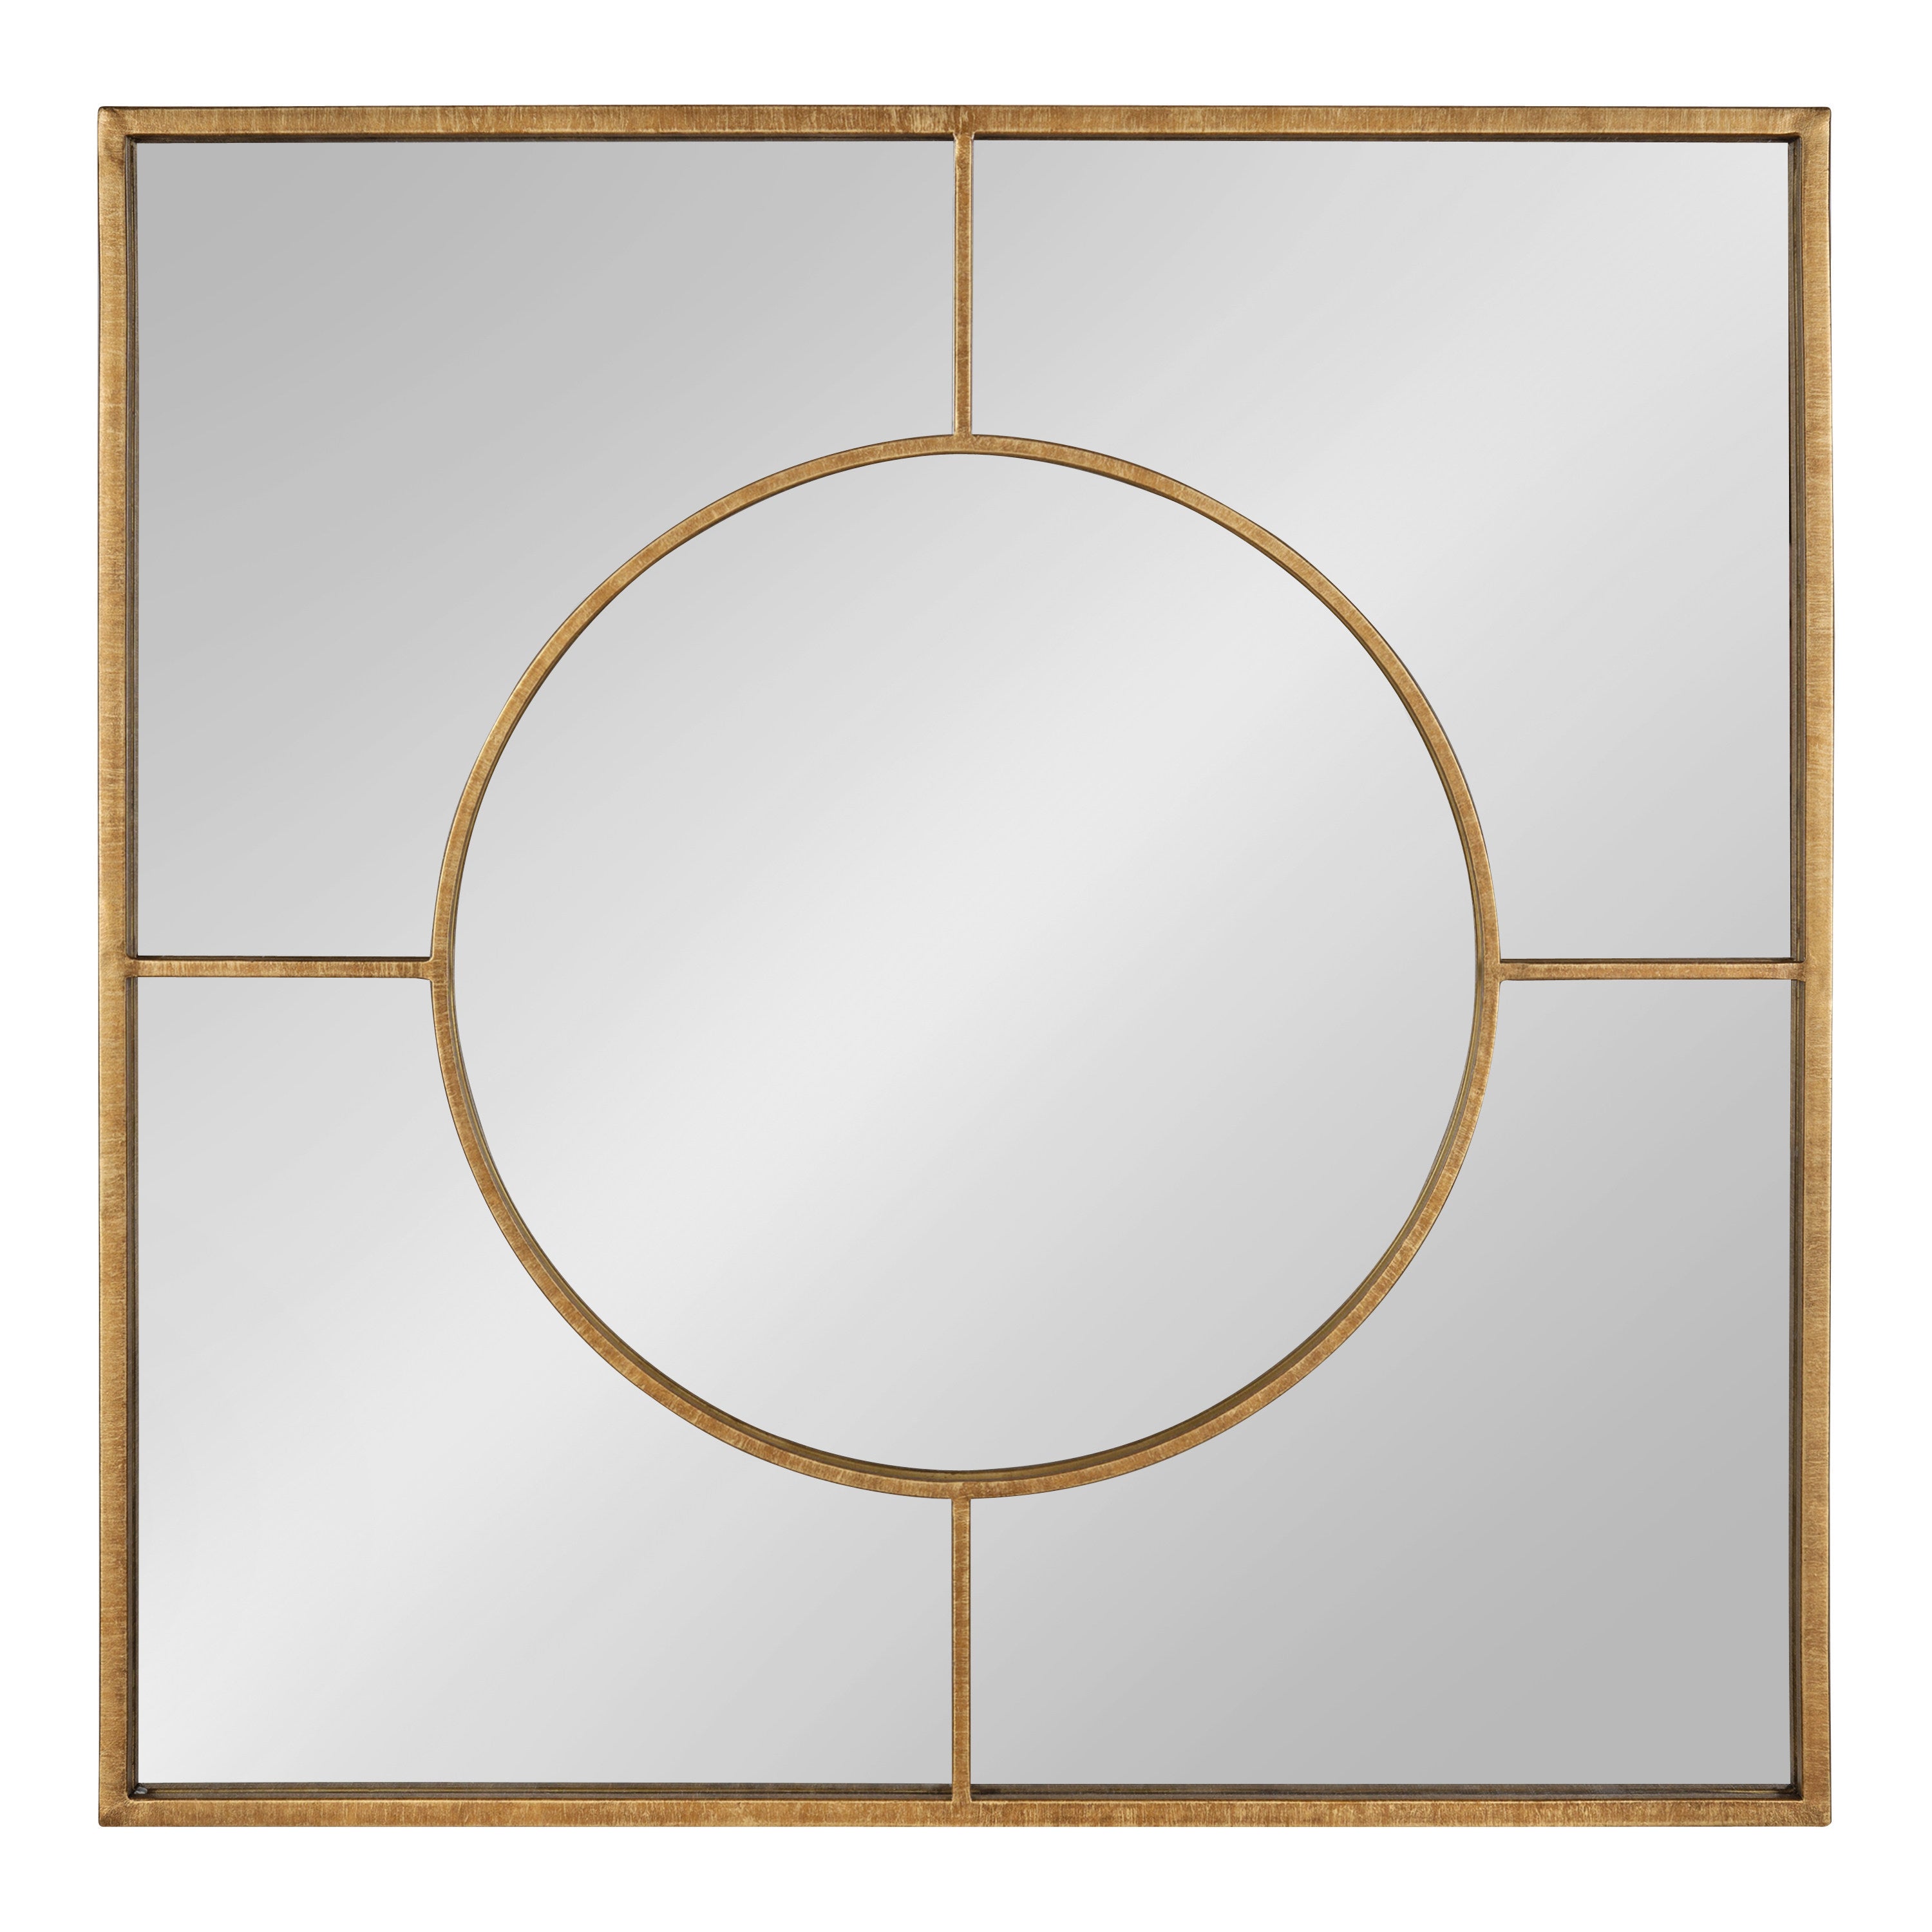 Ansonia Modern Square Mirror